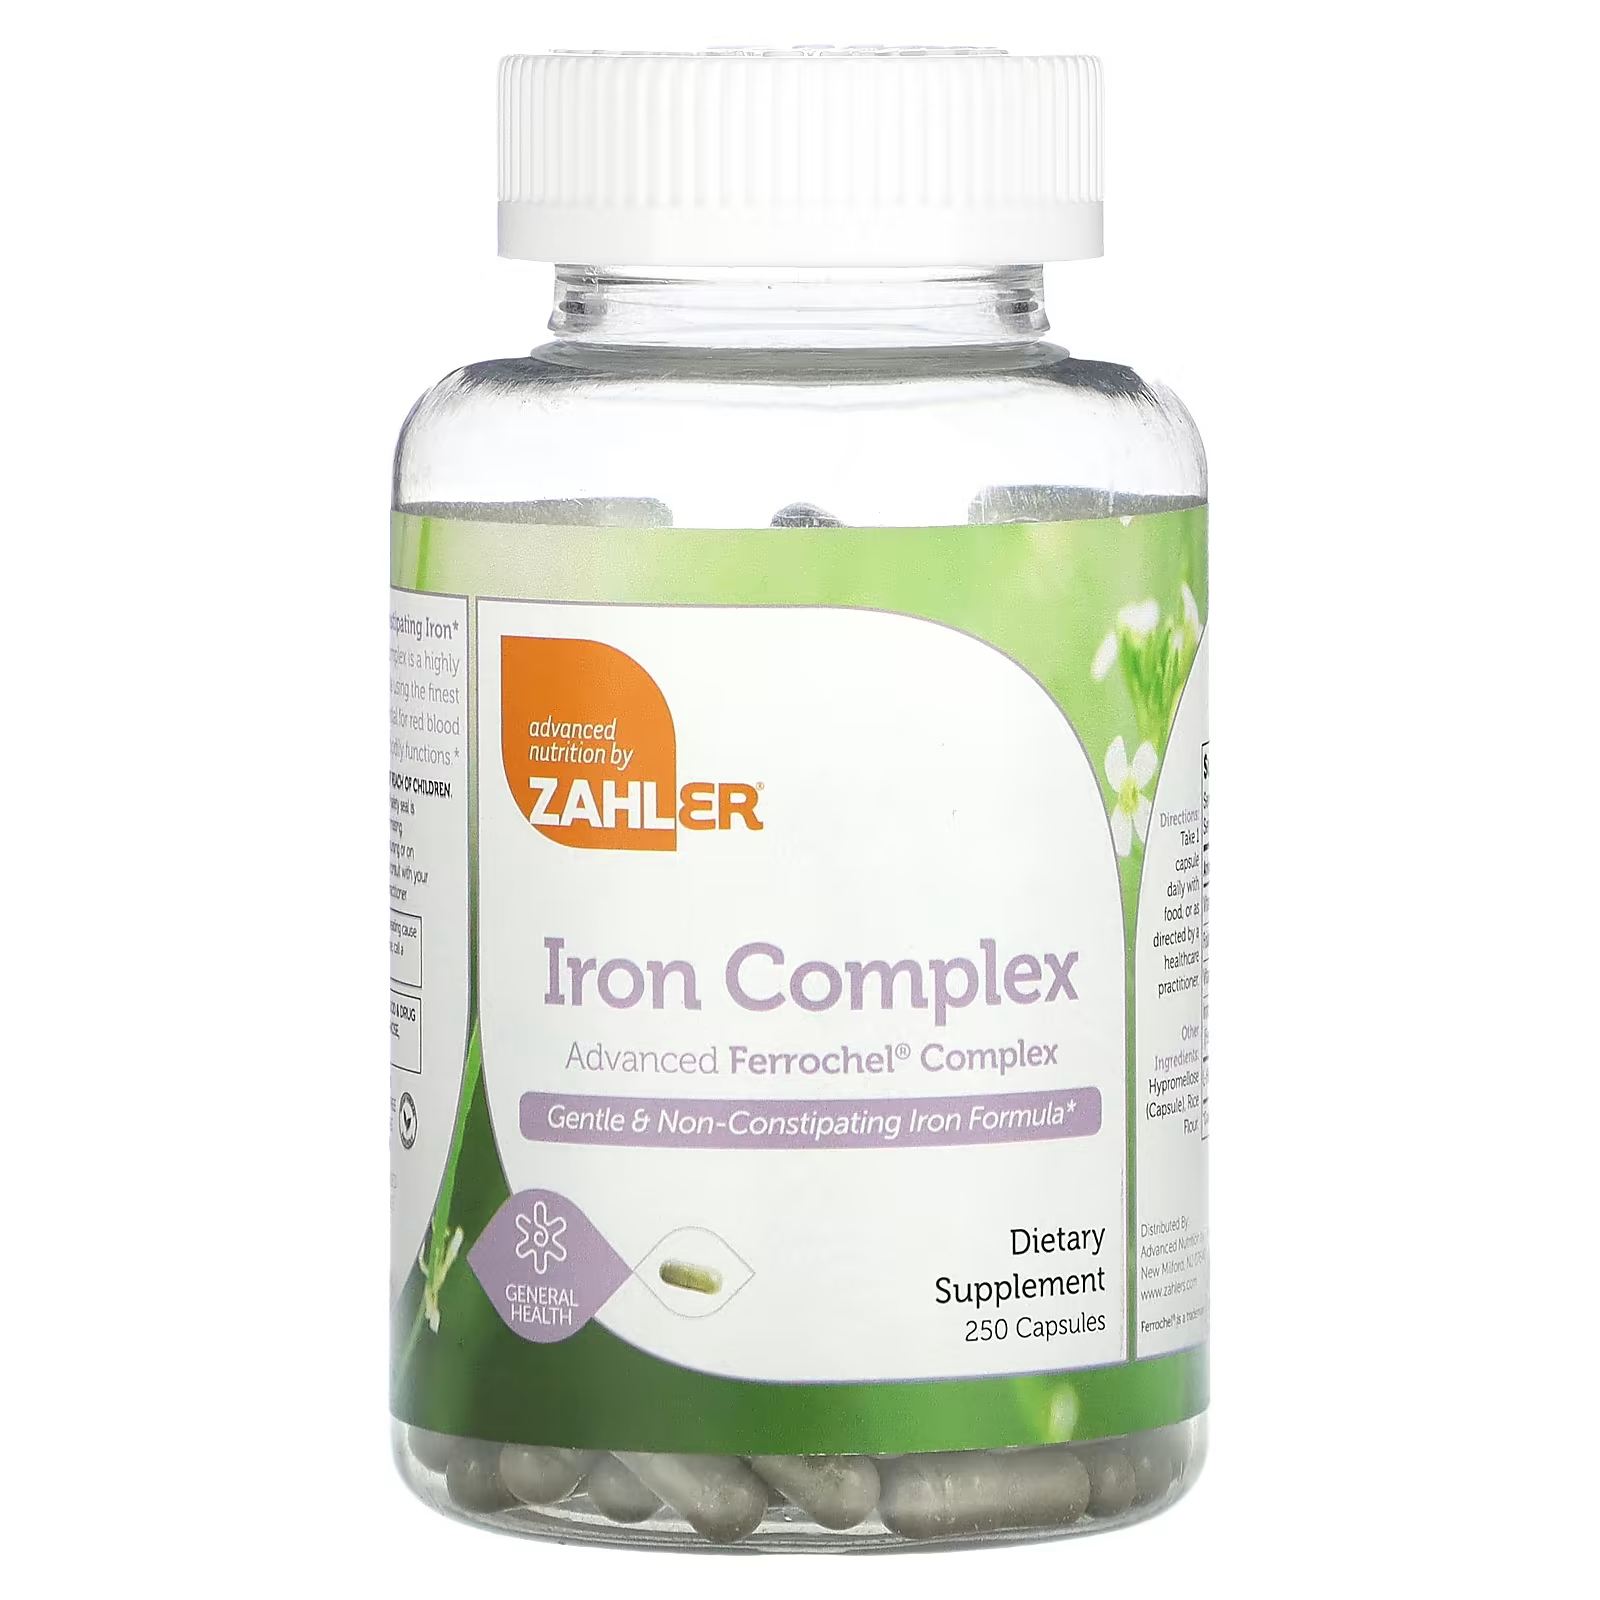 Zahler Iron Complex Мягкая формула железа, не вызывающая запоров, 250 капсул zahler iron complex мягкая формула железа не вызывающая запоров 250 капсул